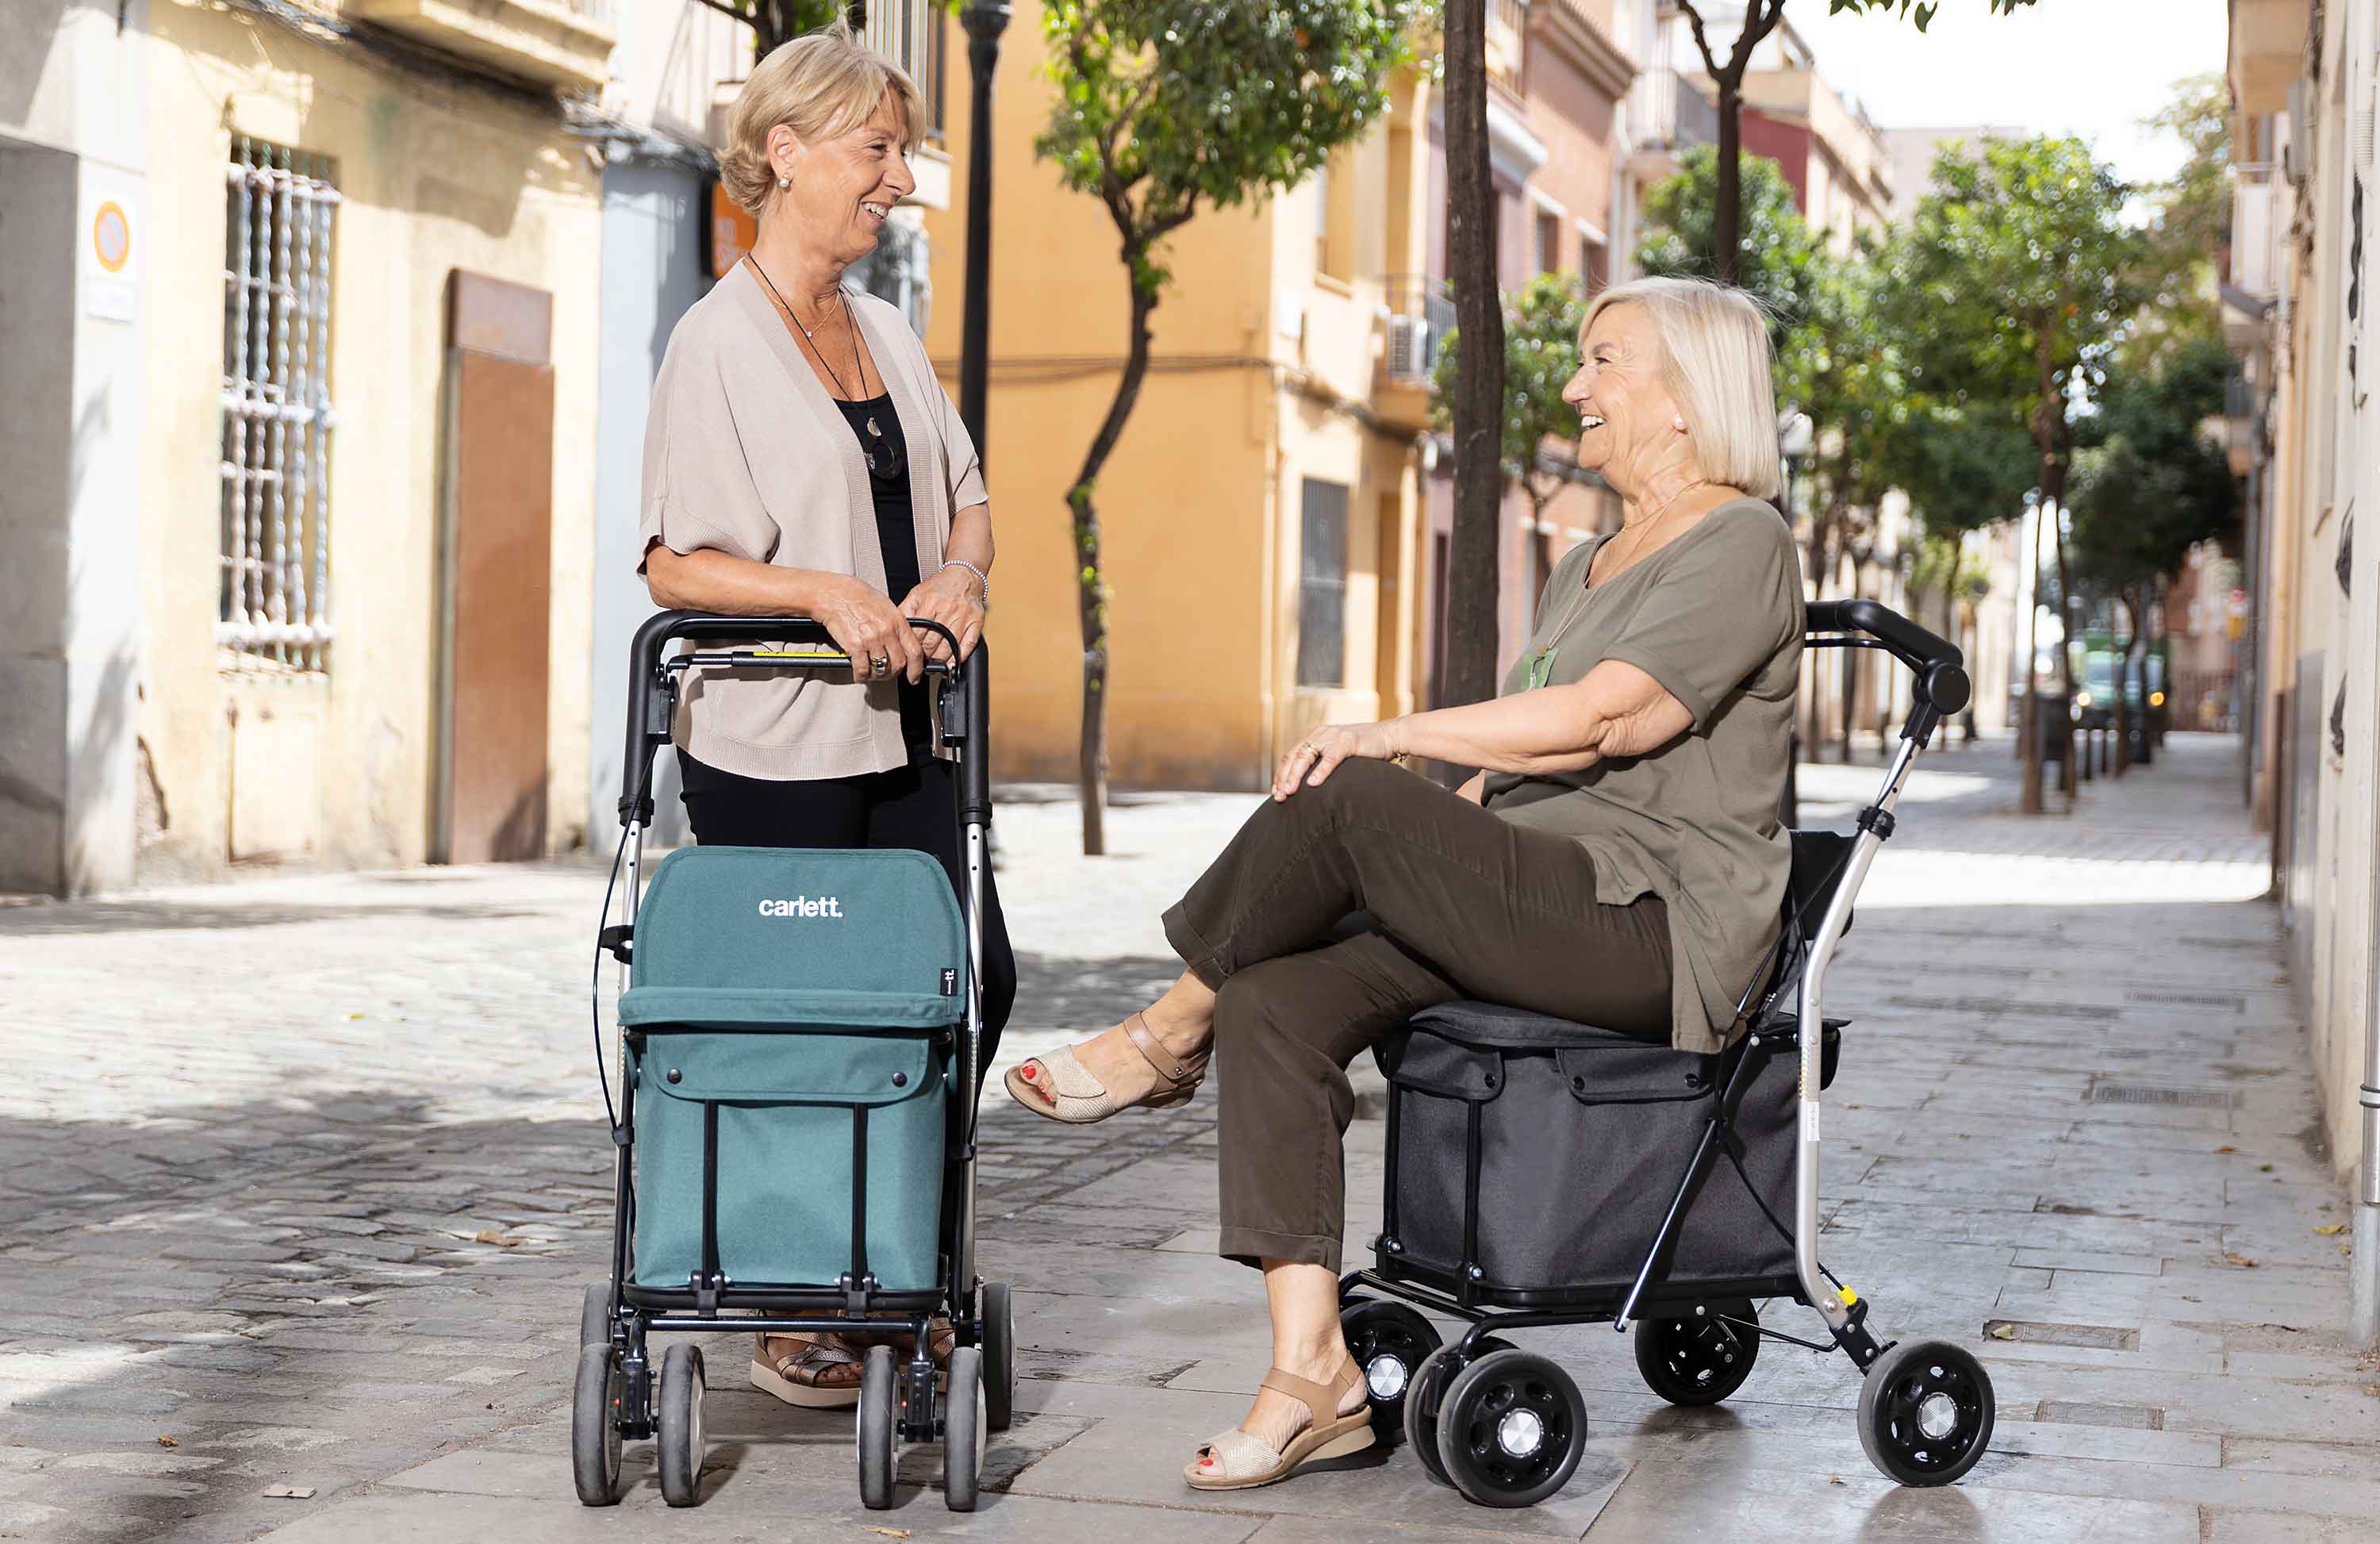 Carro de compra con asiento carlett comfort — Ortopedia y Rehabilitación